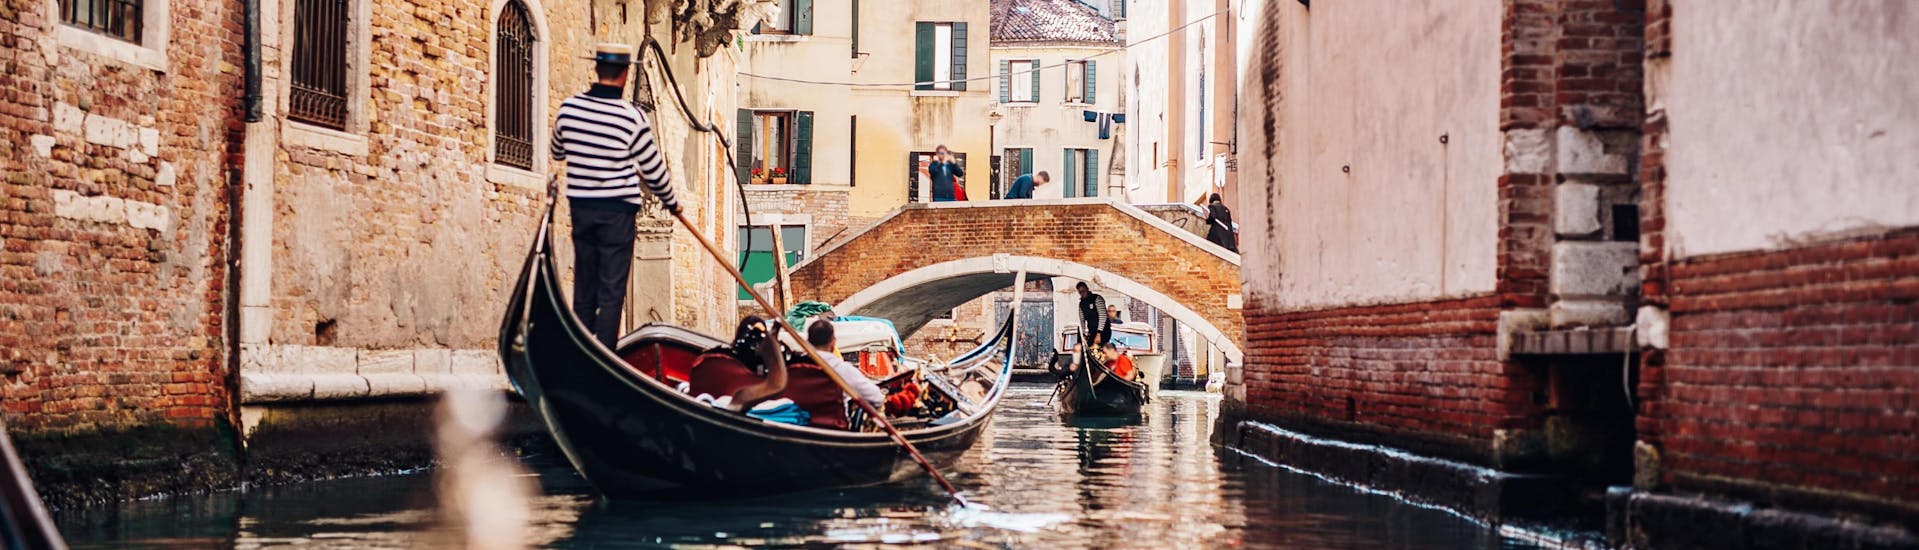 Een gondelier peddelt door een smal kanaal tijdens een gondelvaart in Venetië.